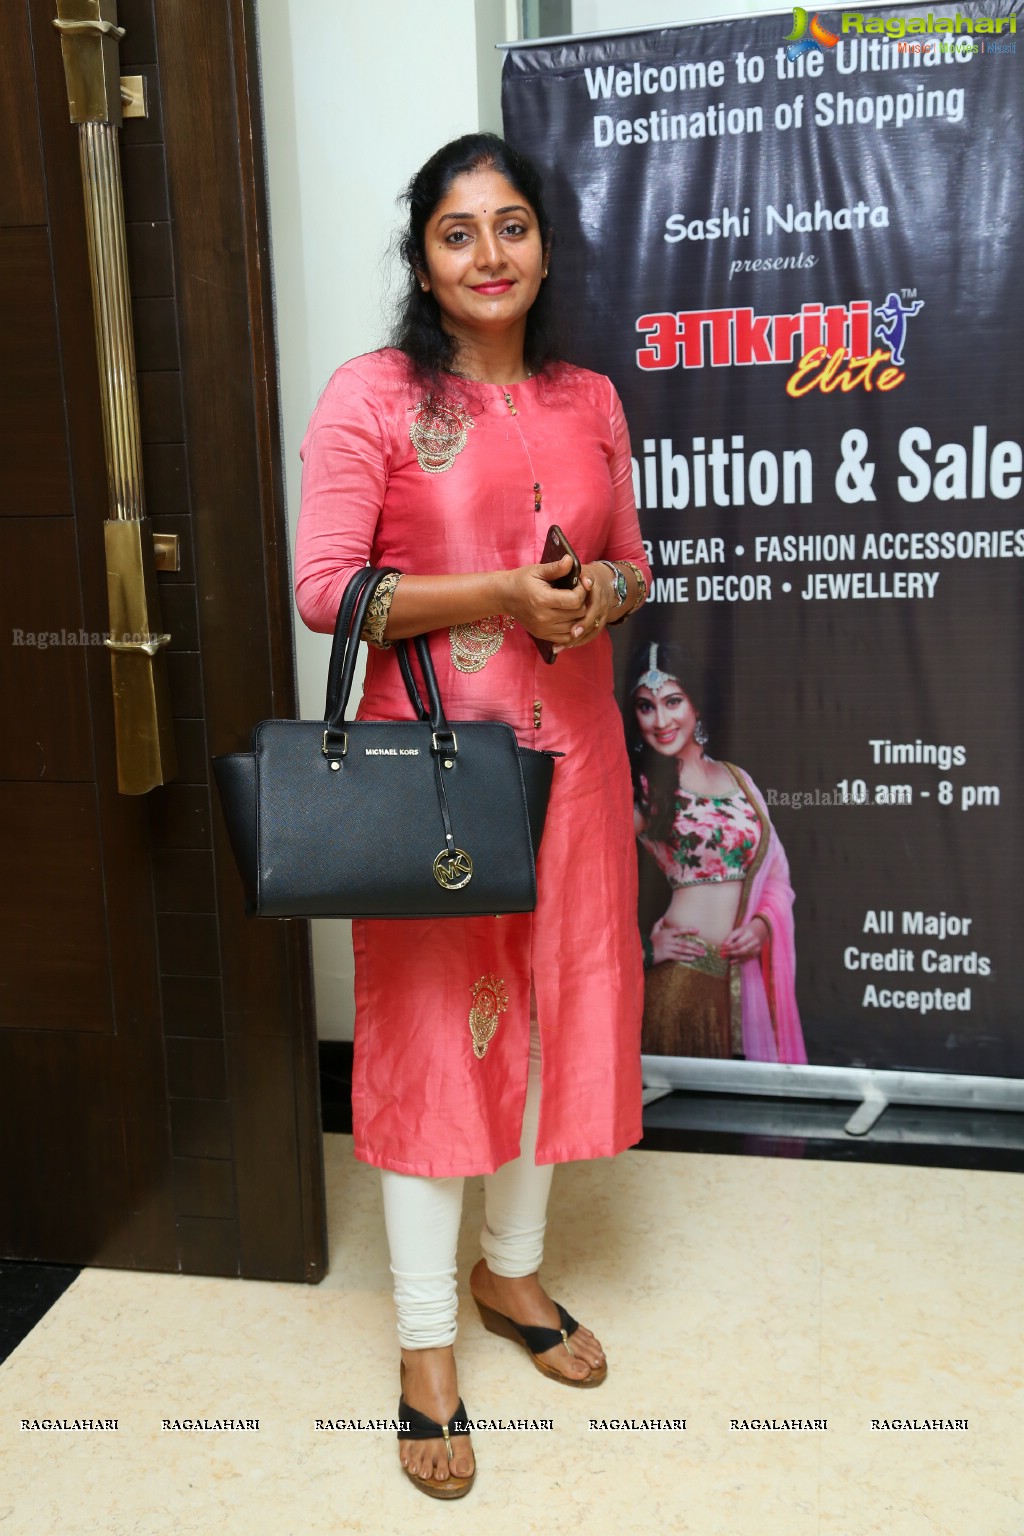 Akritti Elite Exhibition and Sale at Taj Deccan